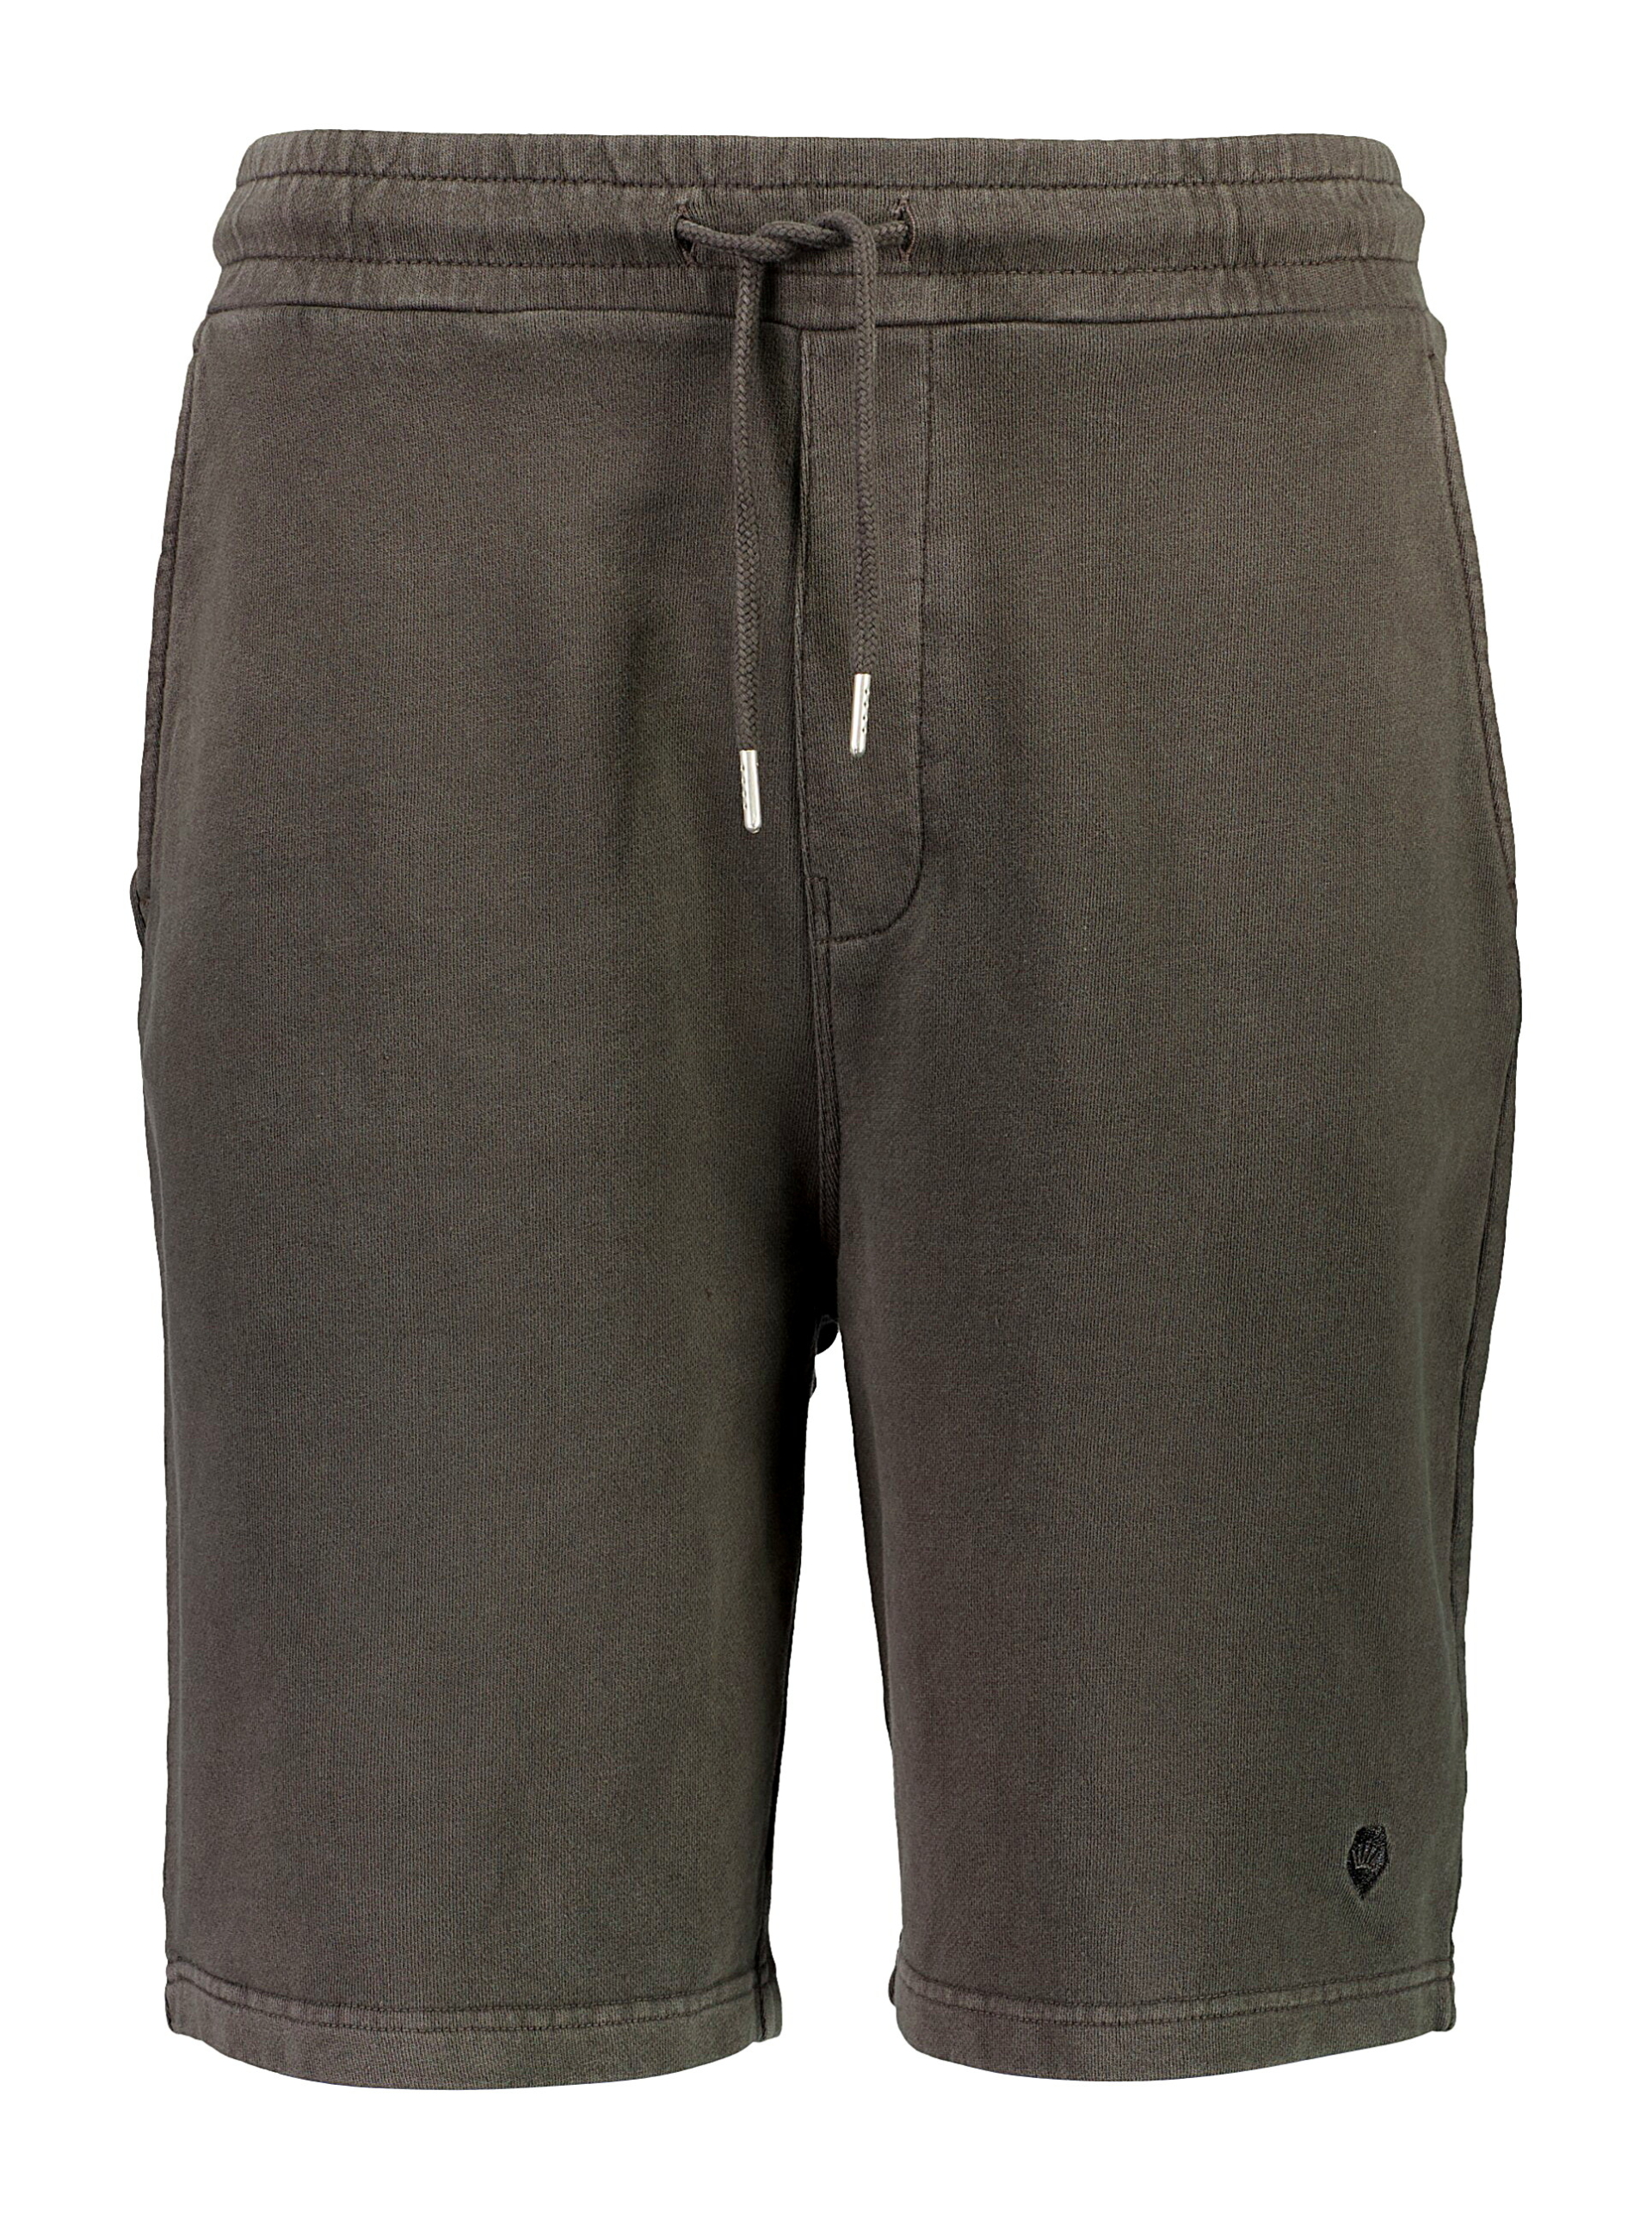 Junk de Luxe Casual shorts svart / dusty black